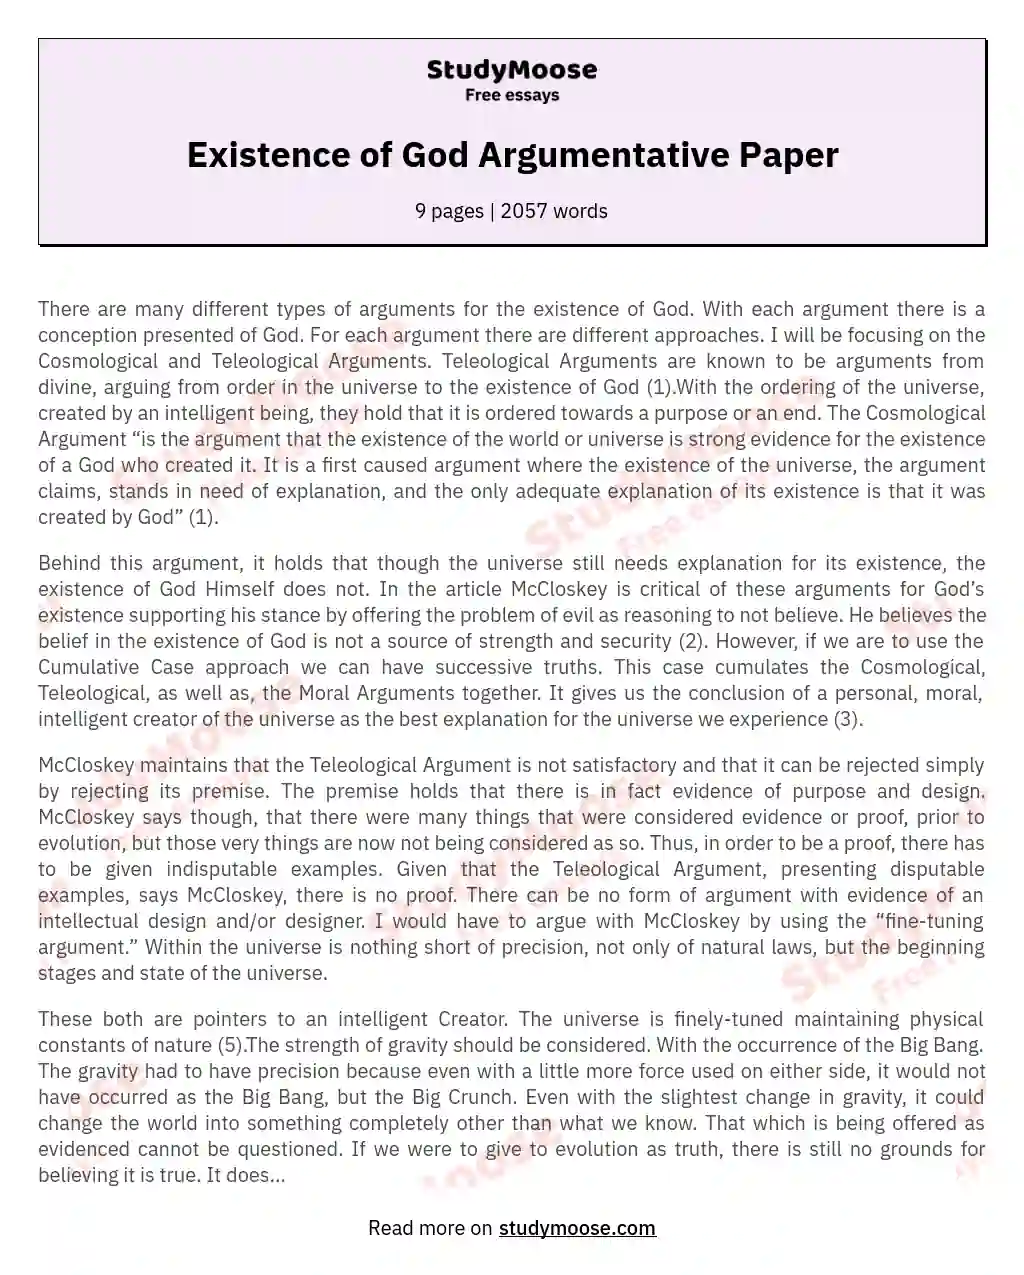 Existence of God Argumentative Paper essay